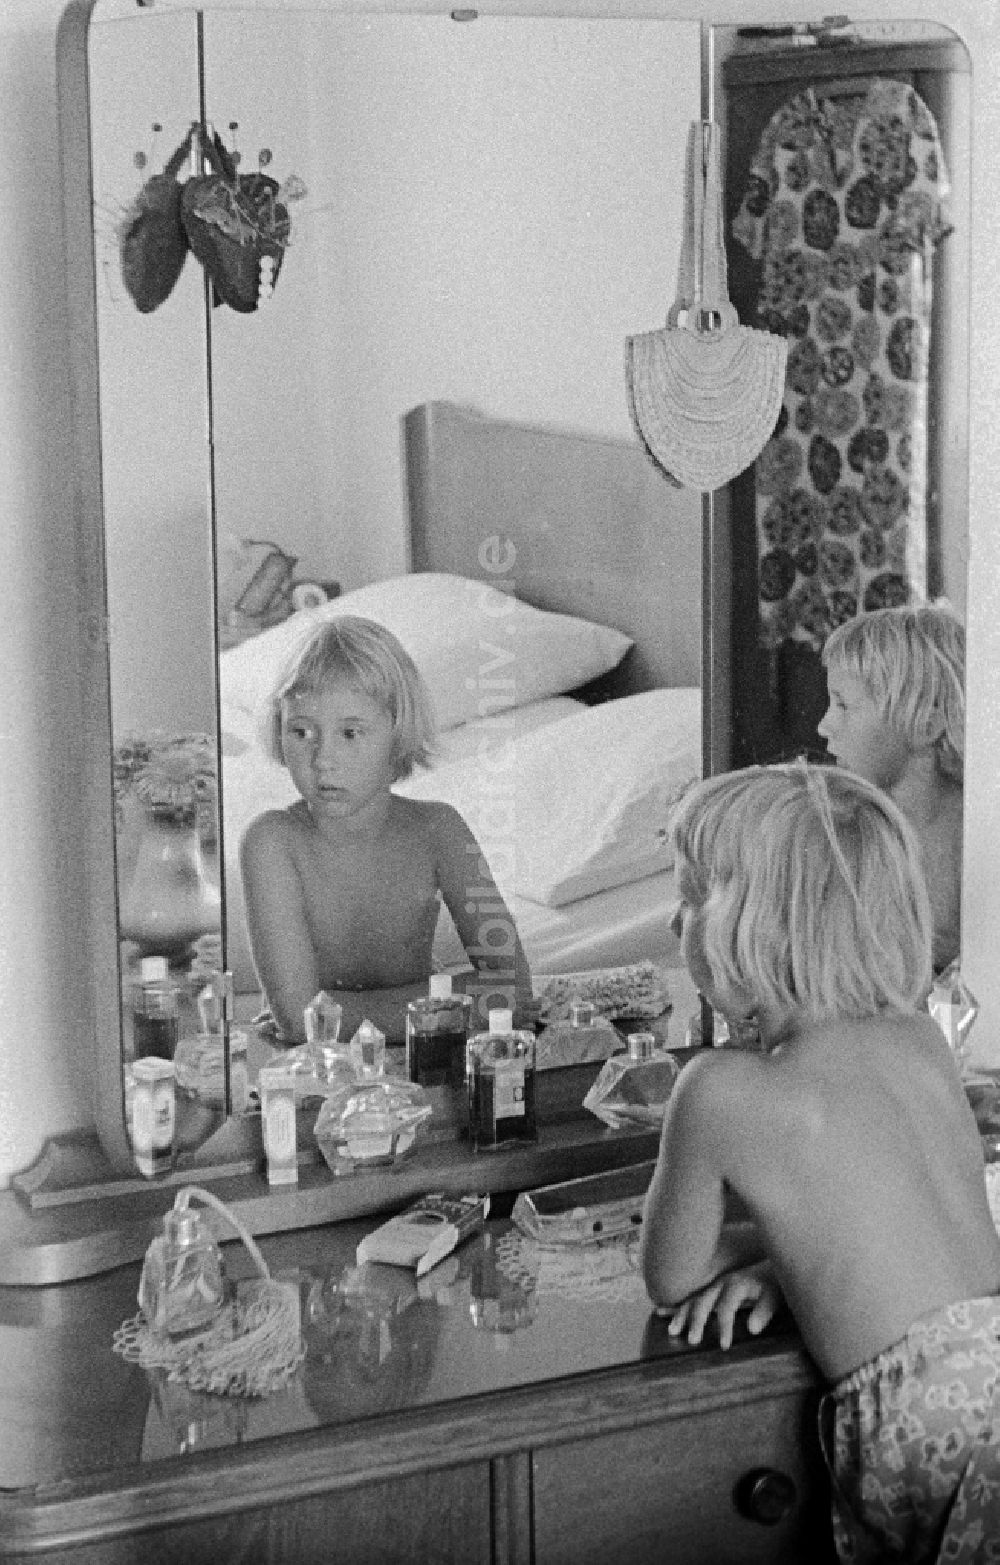 DDR-Bildarchiv: Halle (Saale) - Zwei Kinder vor einer Frisierkommode mit 3-teiligen Spiegel, Glasplatte und verschiedenen Flakons in Halle (Saale) in Sachsen-Anhalt in der DDR